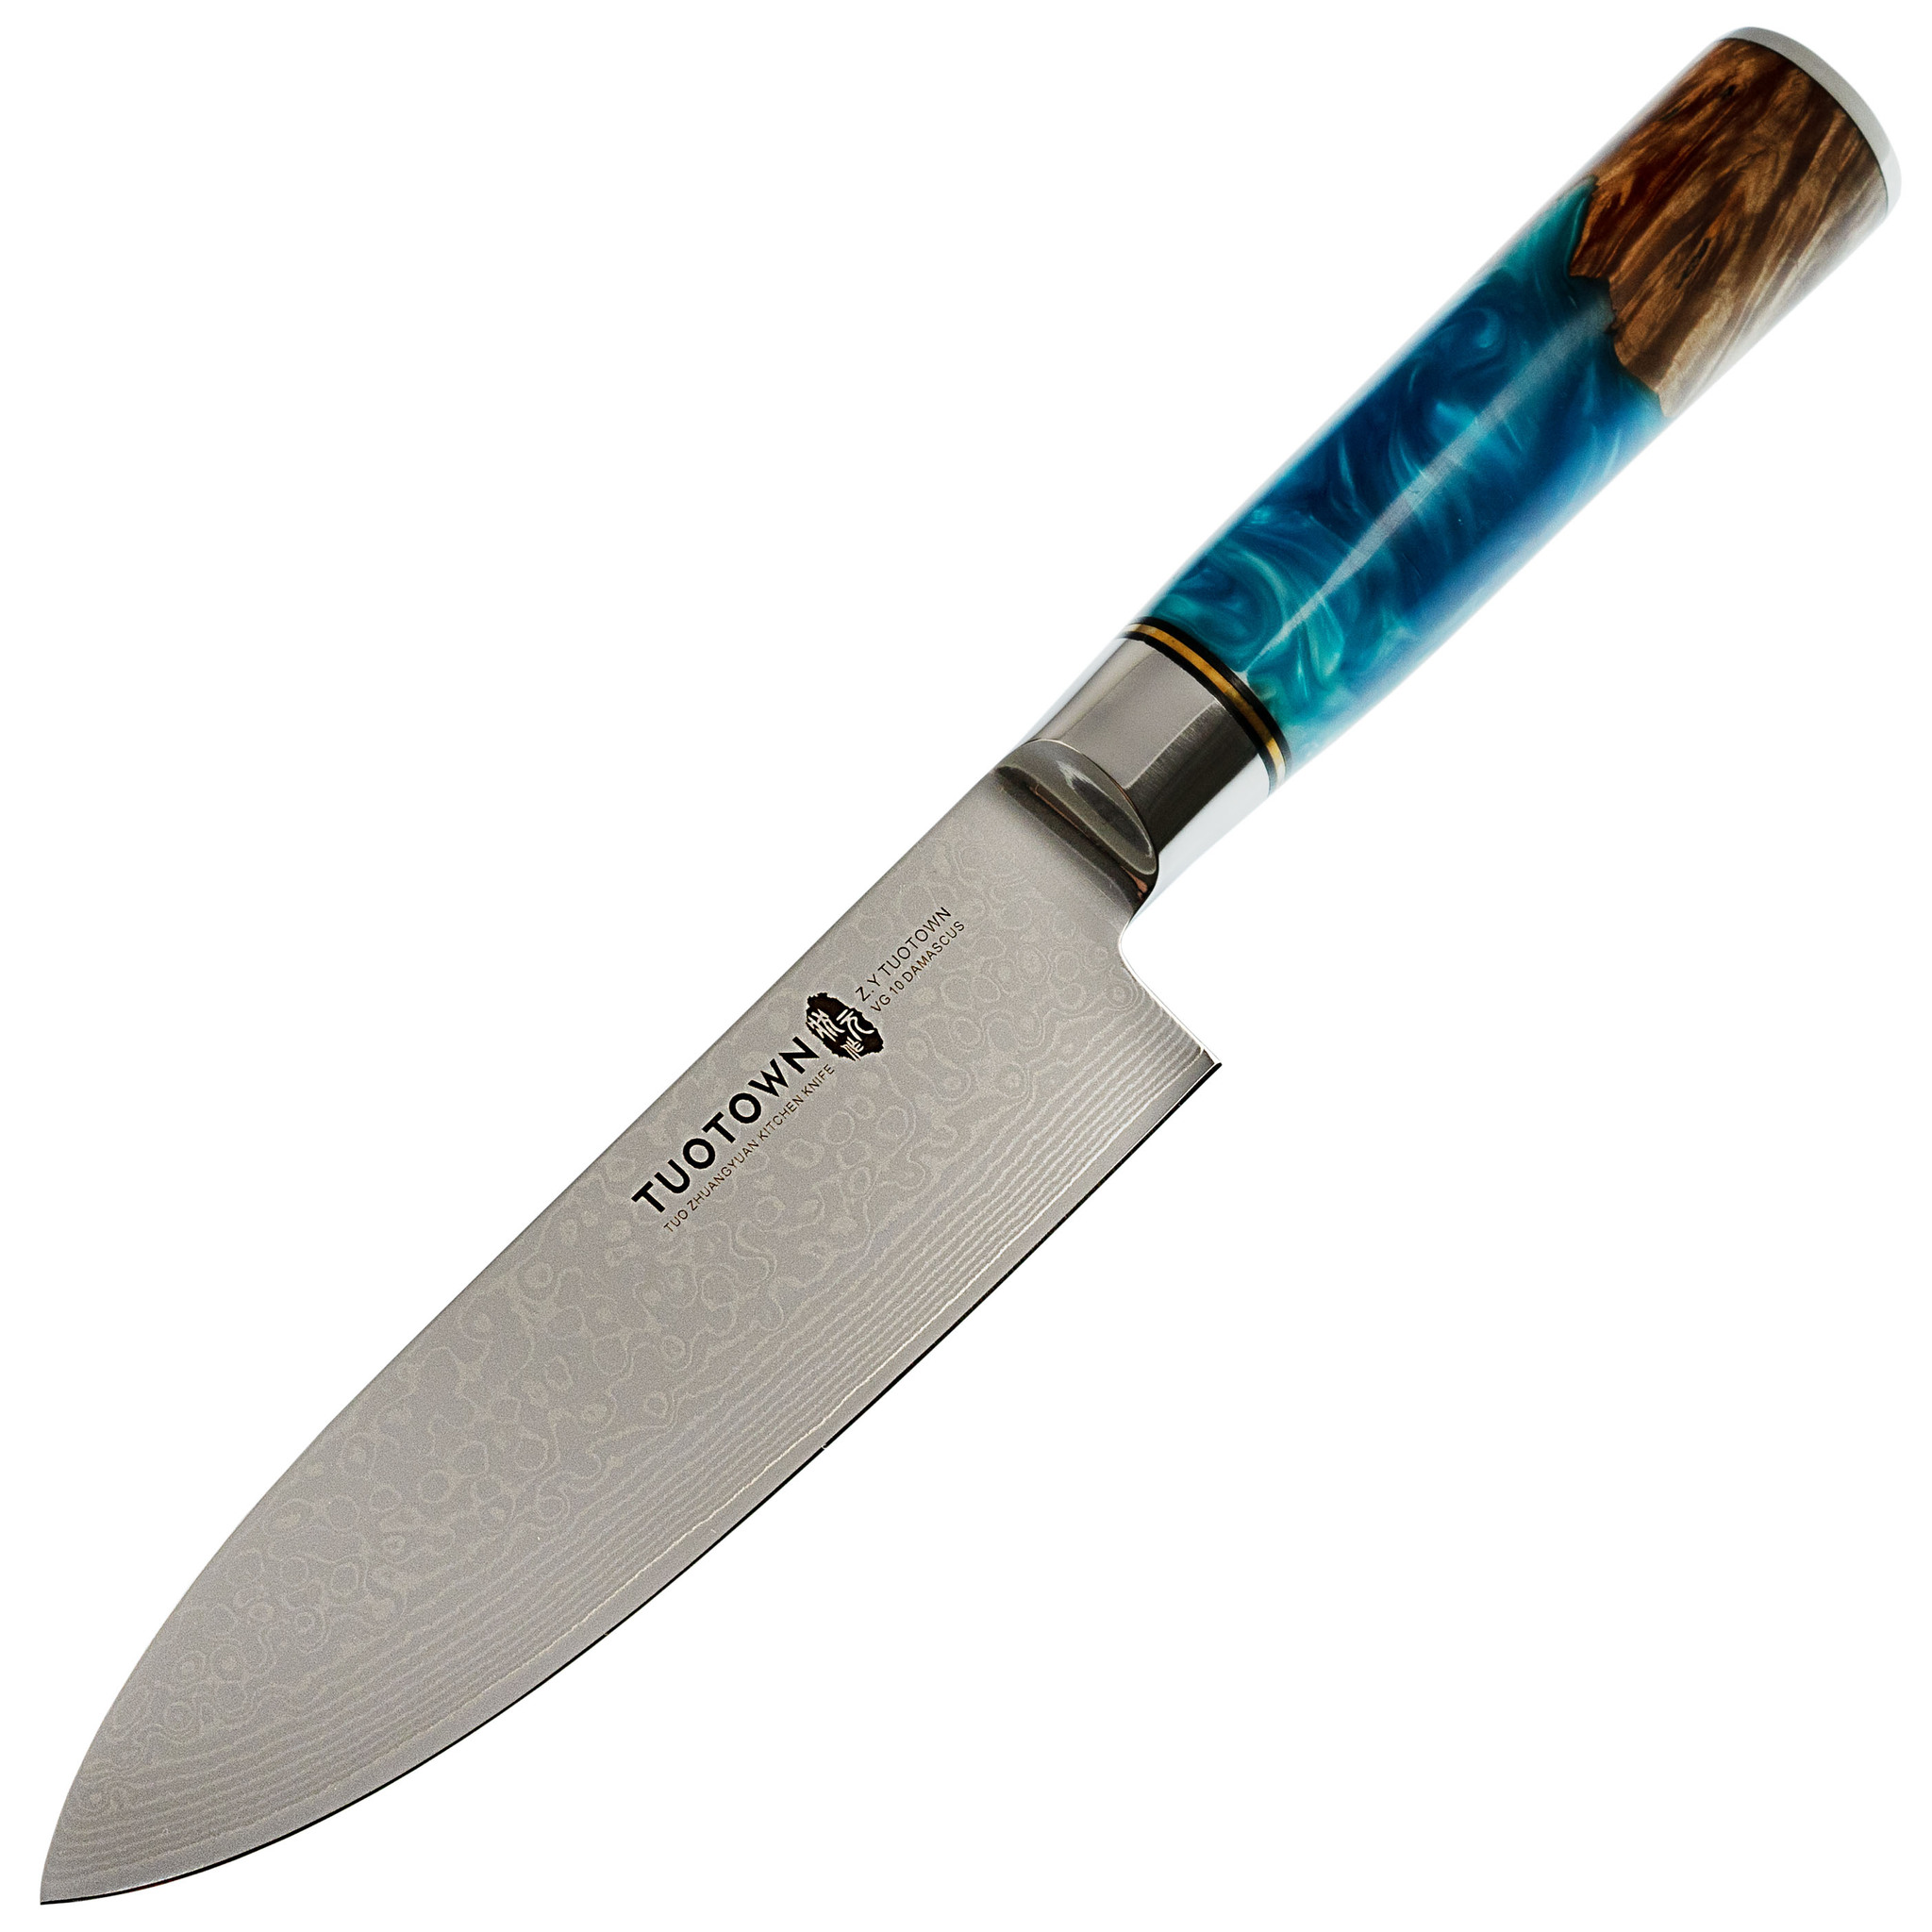 кухонный нож tuotown для хлеба клинок 20 см Нож кухонный Tuotown DM003, сталь VG-10 Damascus, рукоять дерево/эпоксидка